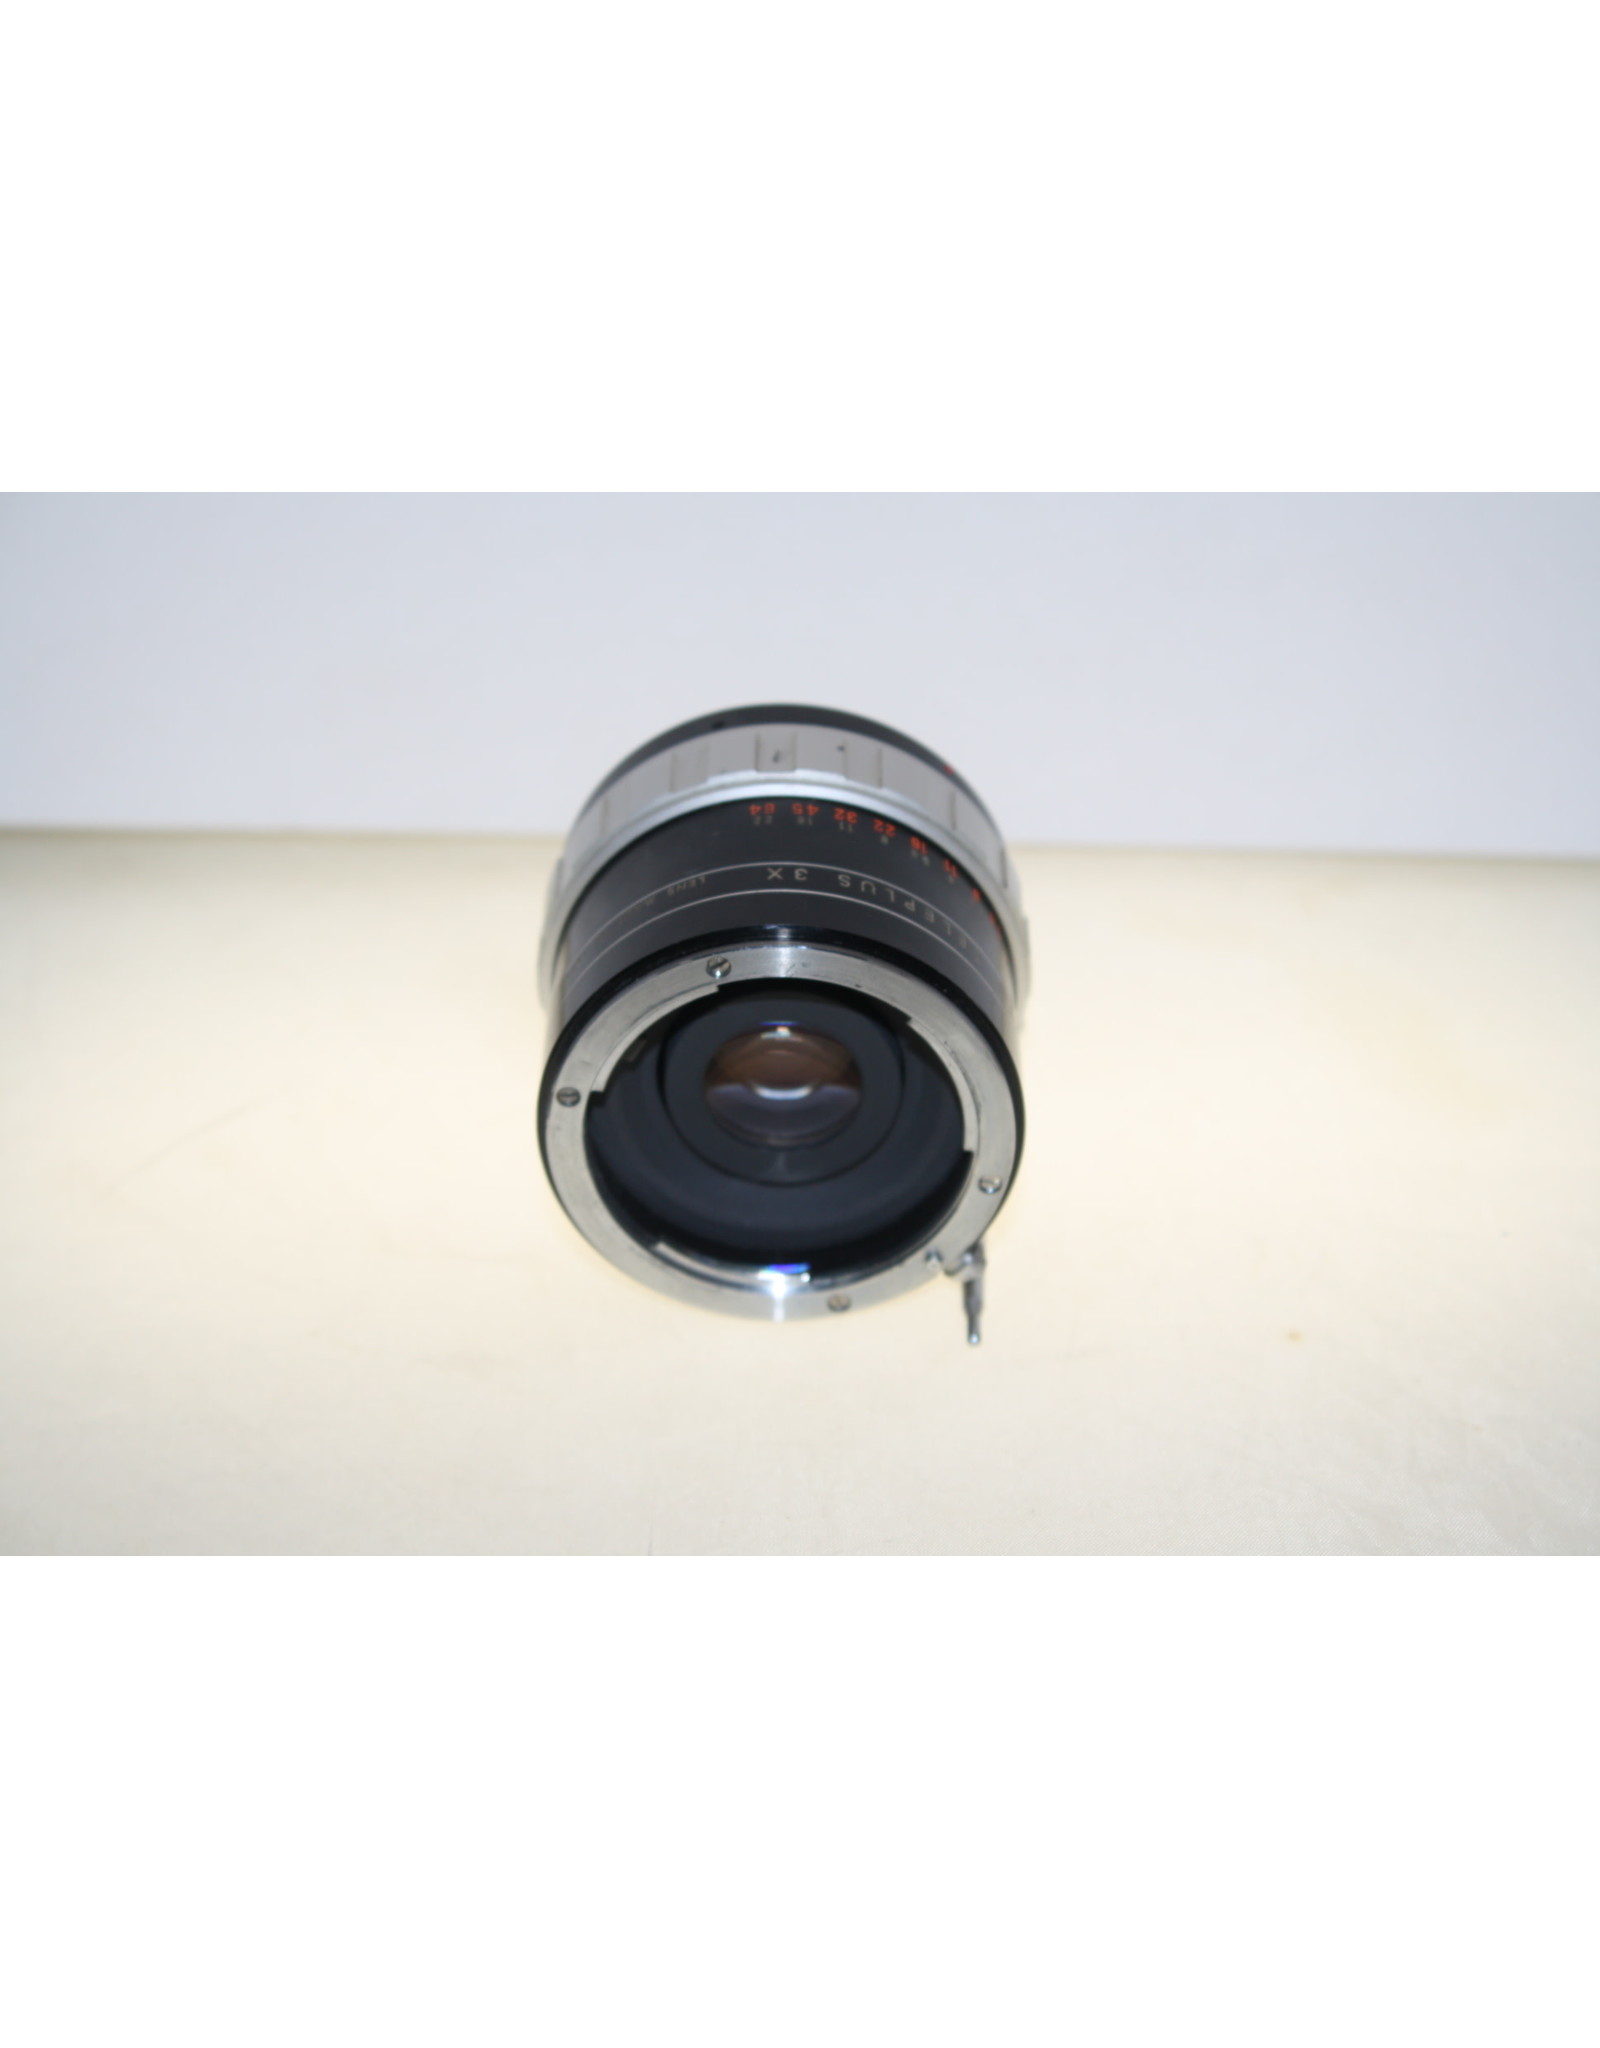 Kenko Kenko NT Auto Teleplus 3X Converter Lens for Nikon F w/ Caps